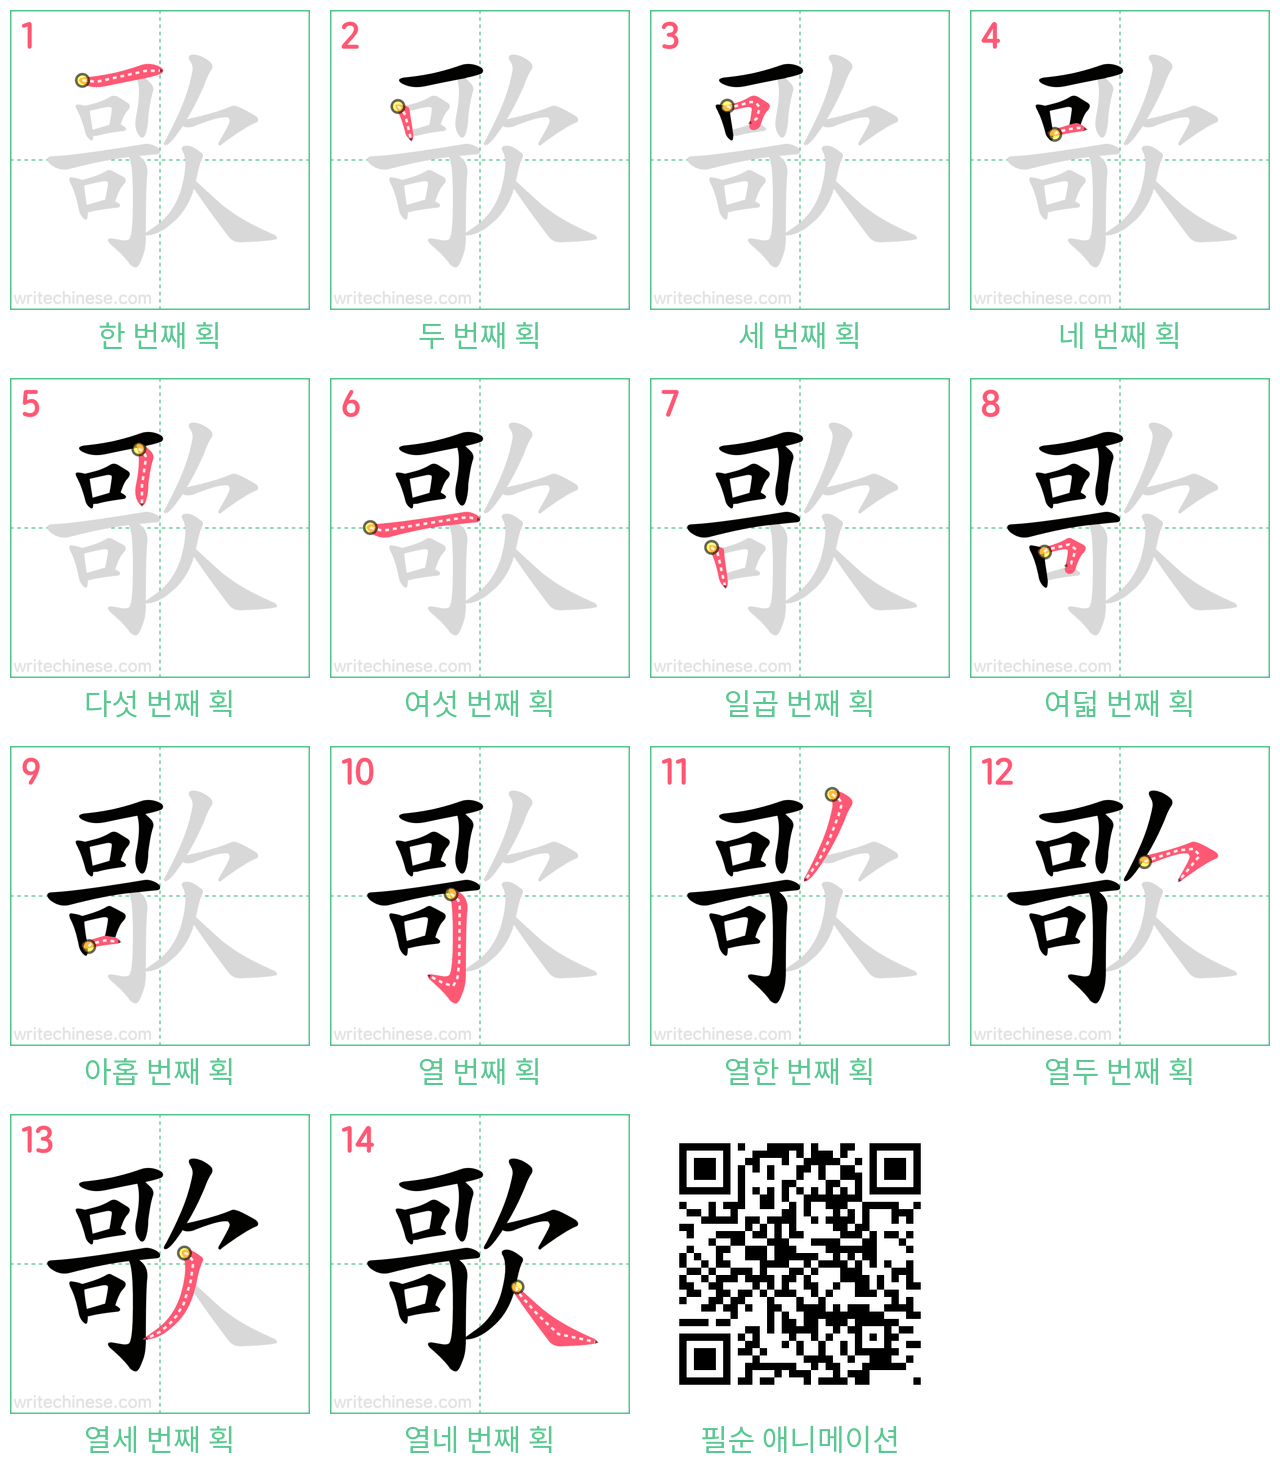 歌 step-by-step stroke order diagrams